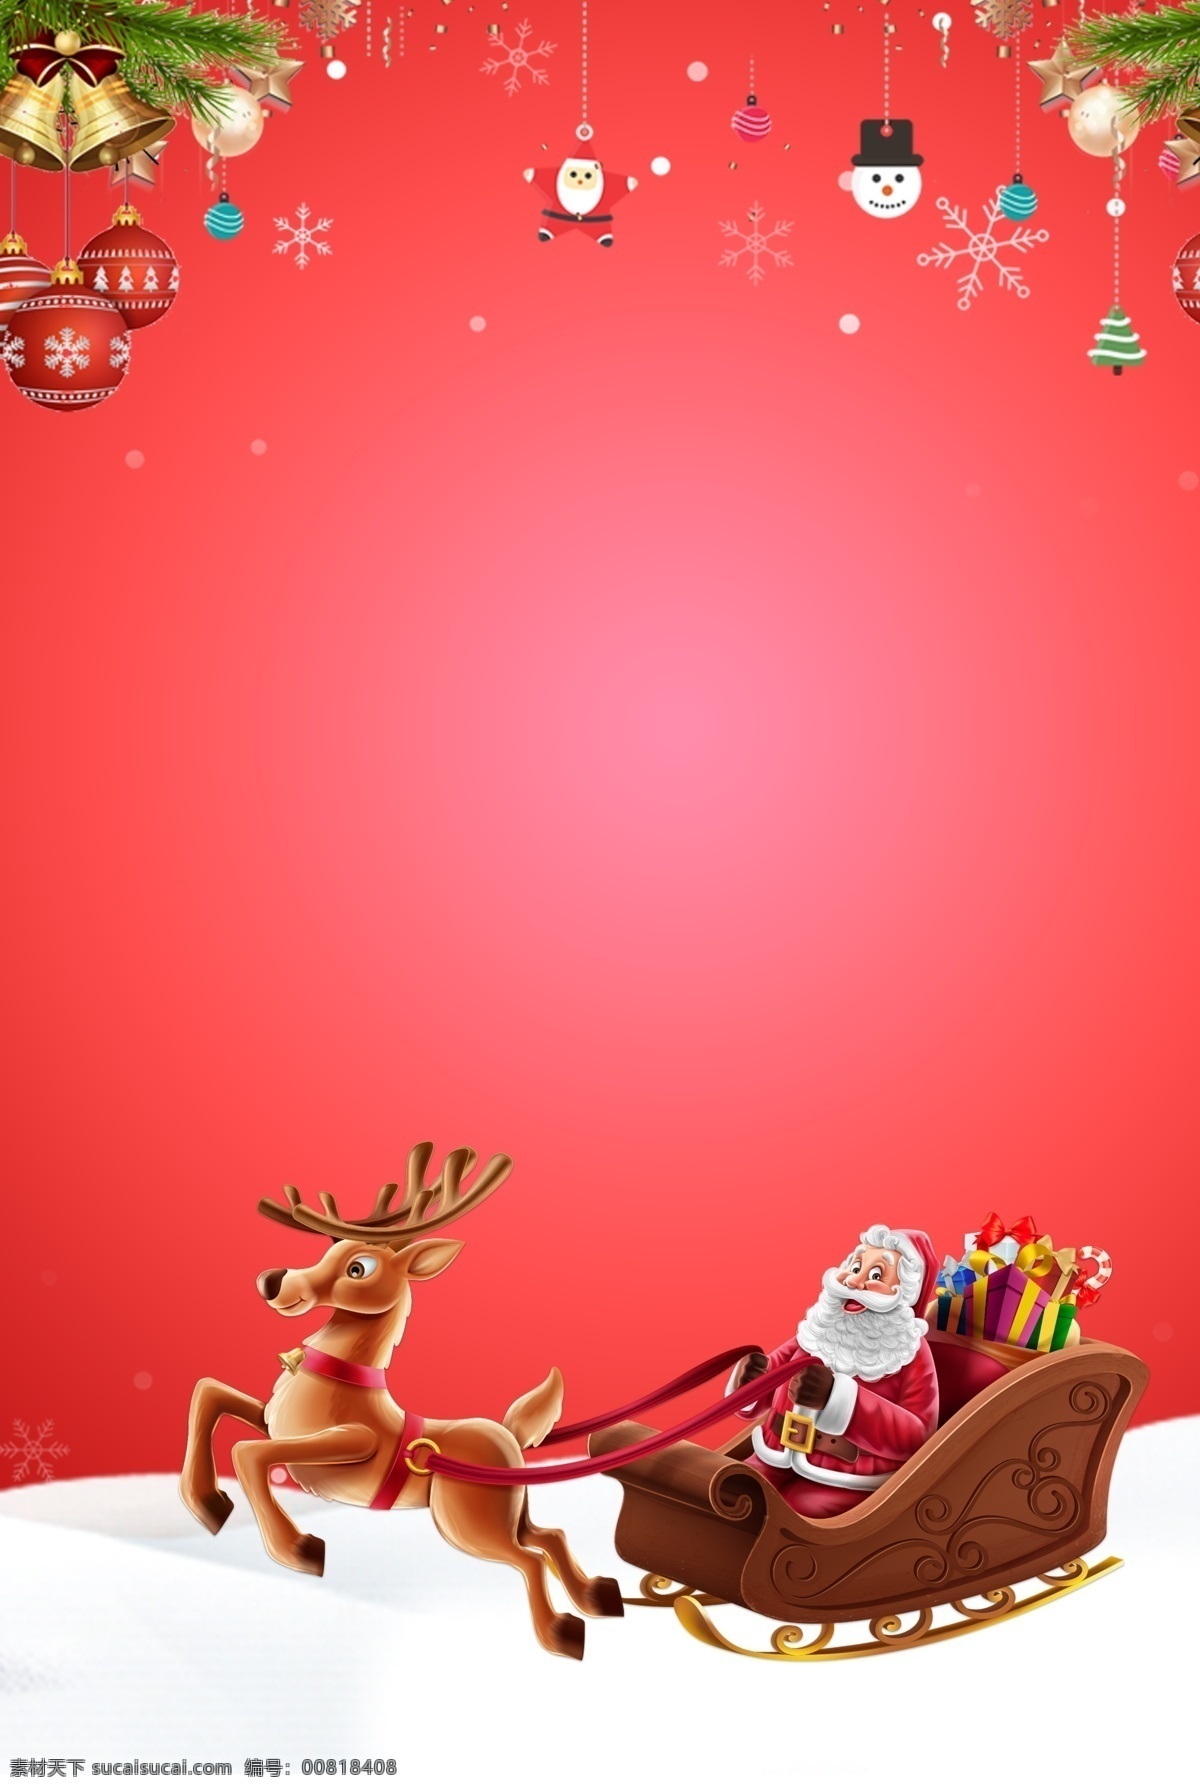 冬天 圣诞节 圣诞老人 背景 圣诞素材 圣诞节促销 圣诞快乐 圣诞节展板 新年活动背景